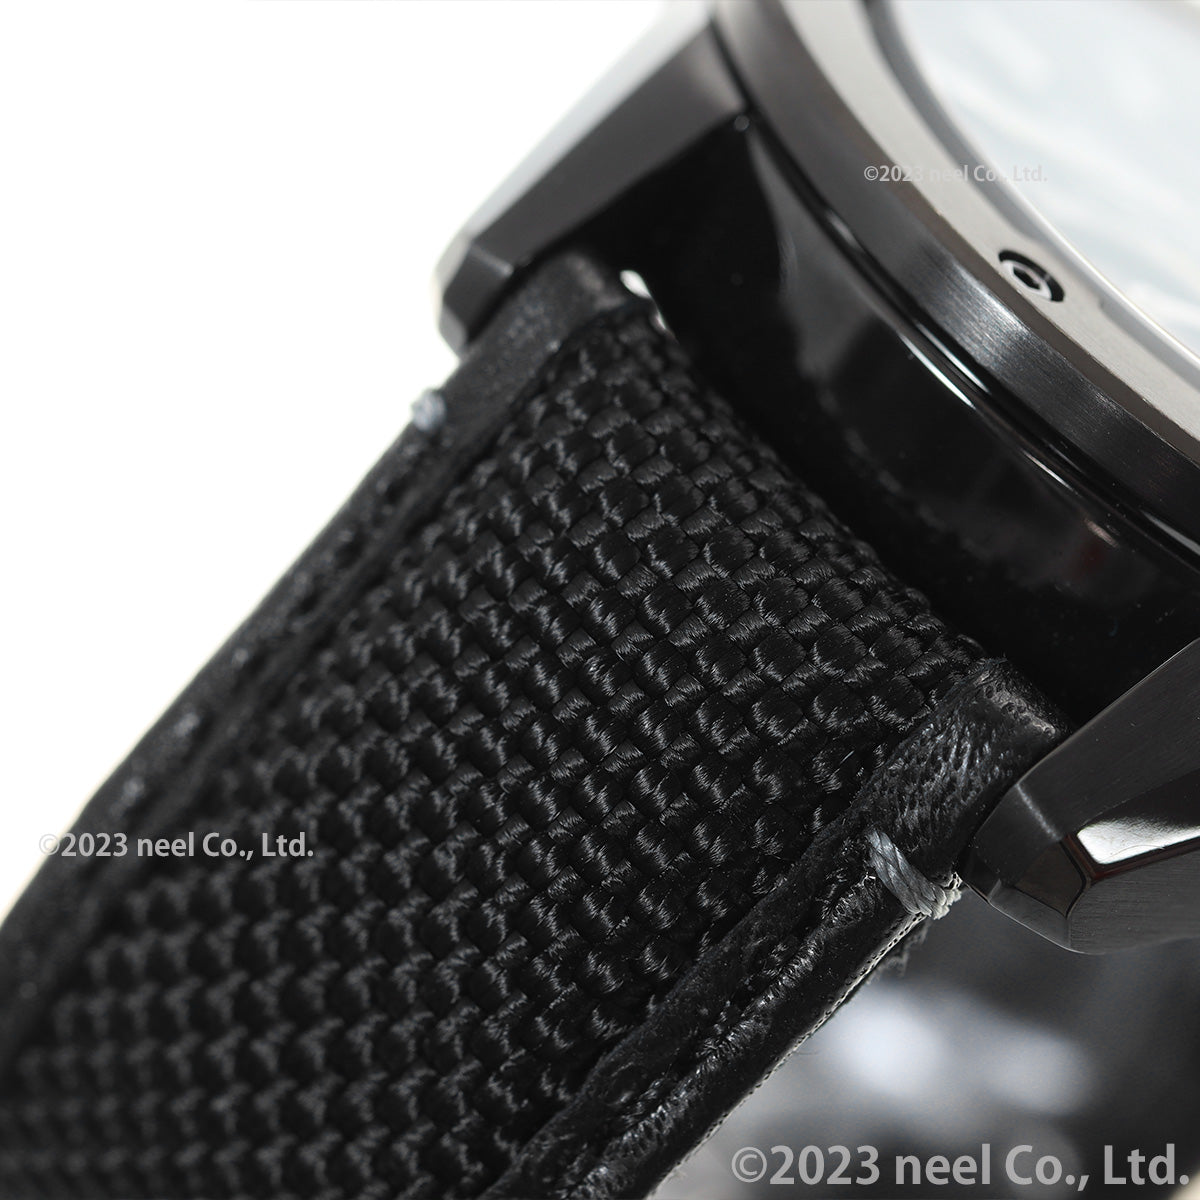 オリエントスター ORIENT STAR アバンギャルドスケルトン 腕時計 メンズ 自動巻き 機械式 スポーツ RK-BZ0002B